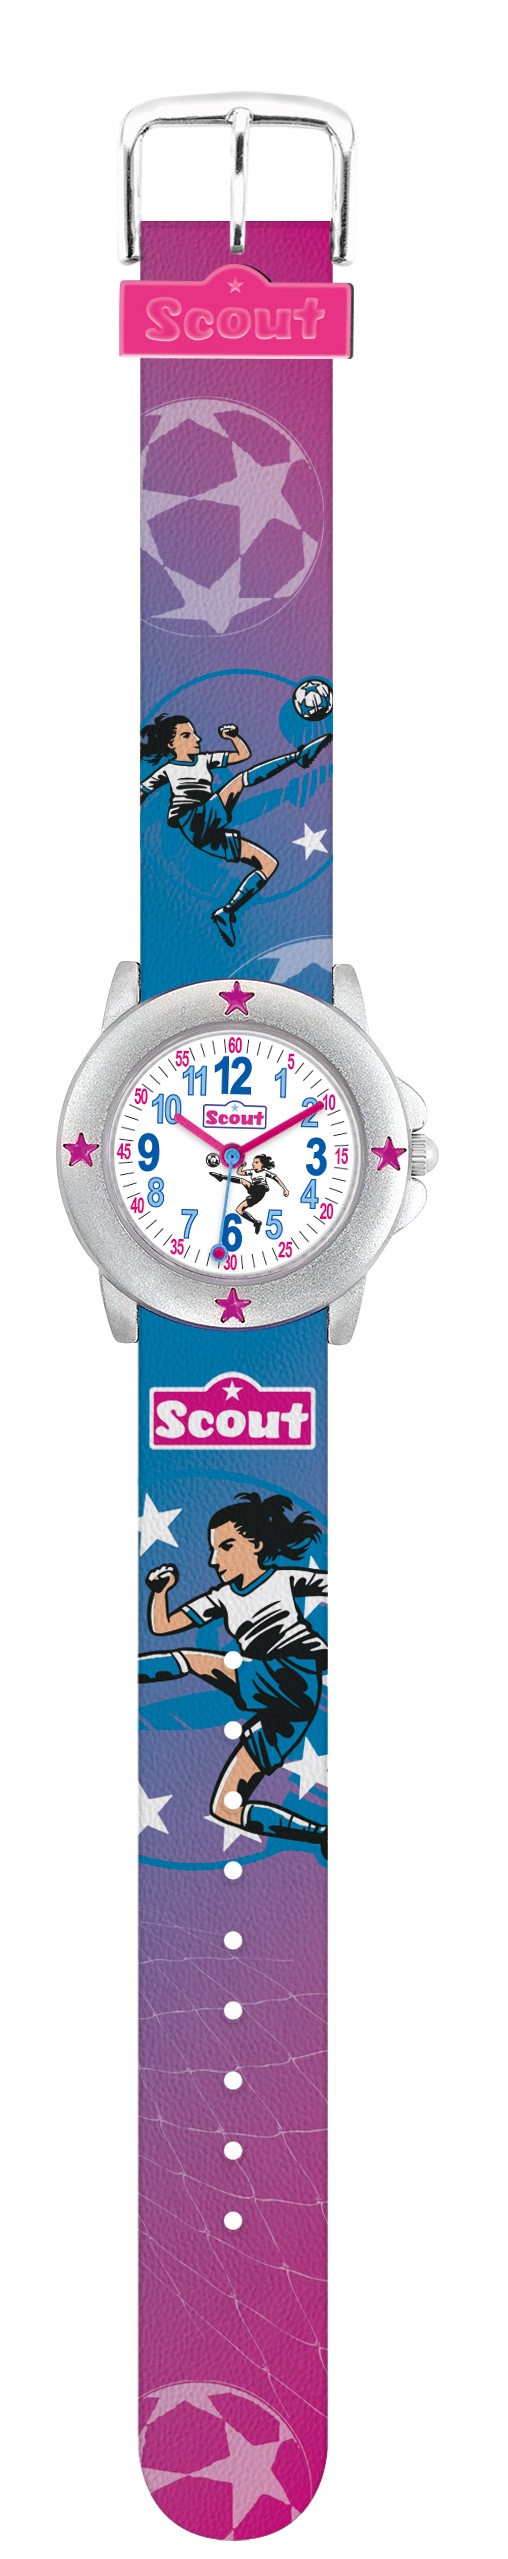 Scout Kinder Armbanduhr Star Kids 280393035 Fußball